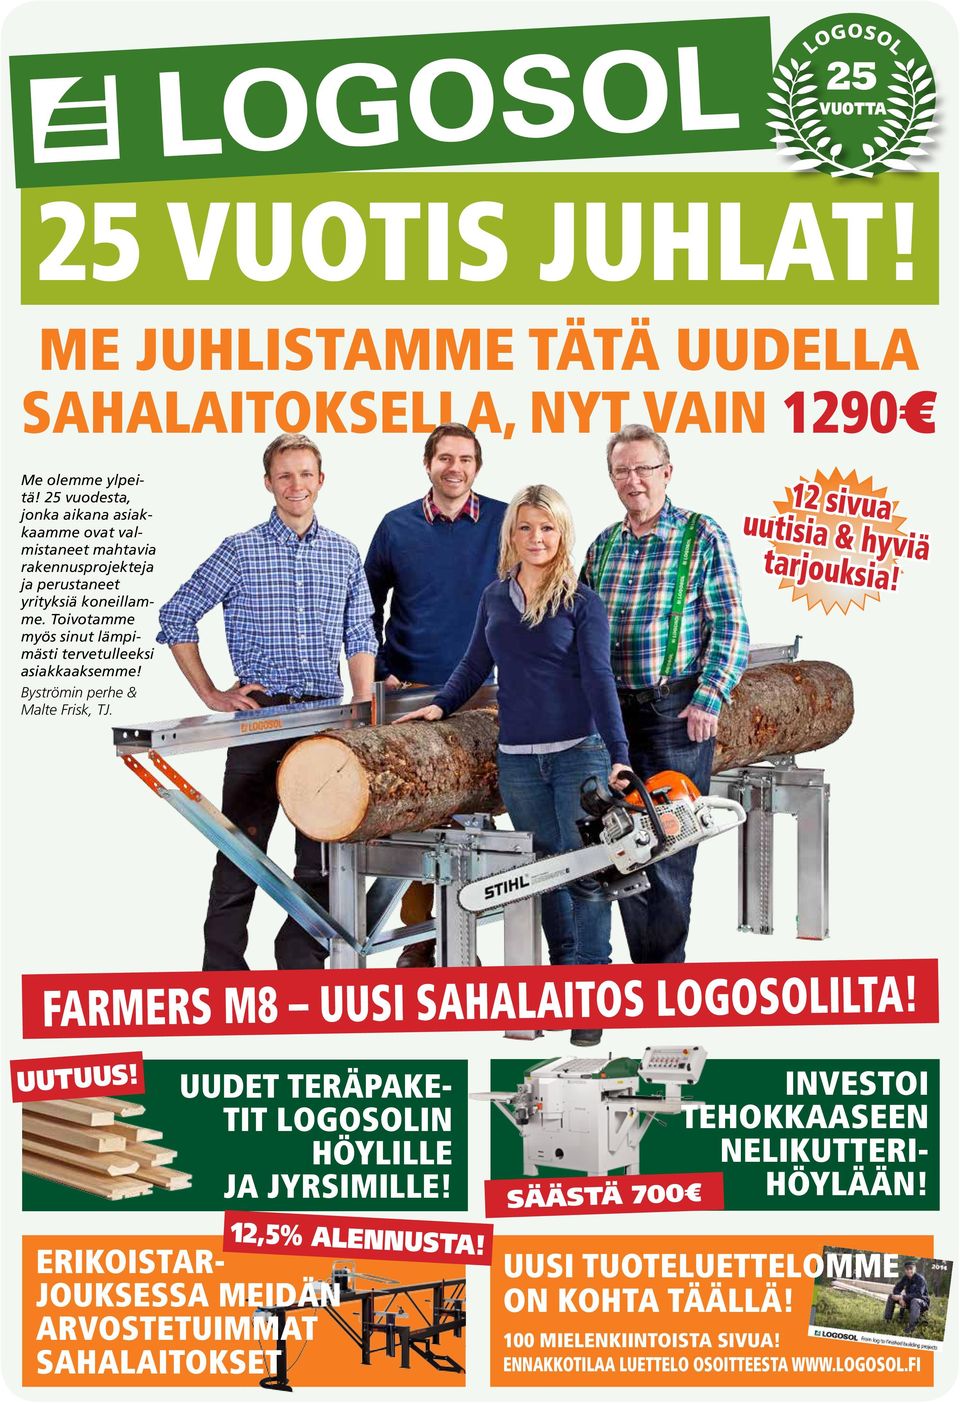 Toivotamme myös sinut lämpimästi tervetulleeksi asiakkaaksemme! Byströmin perhe & Malte Frisk, TJ. 12 sivua uutisia & hyviä tarjouksia! farmers m8 Uusi sahalaitos Logosolilta!